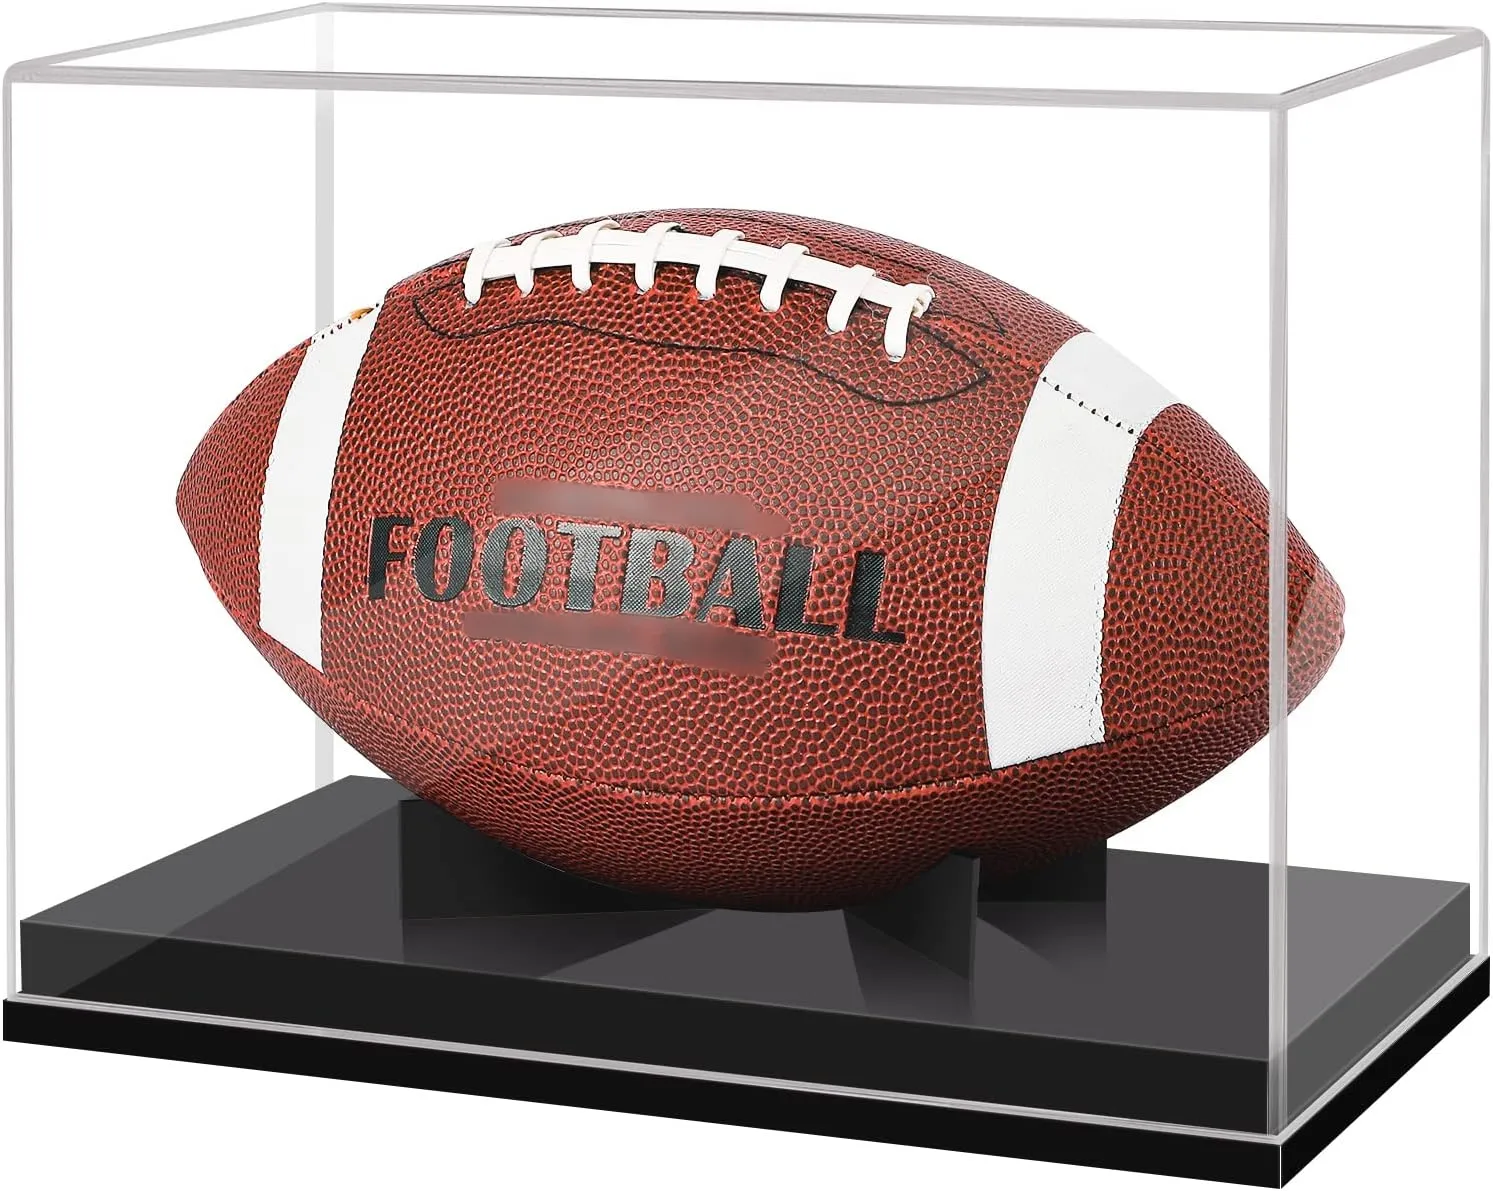 फुटबॉल प्रदर्शन बॉक्स कोई विधानसभा की आवश्यकता एक्रिलिक बॉक्स के लिए फुटबॉल बास्केटबॉल गेंदों